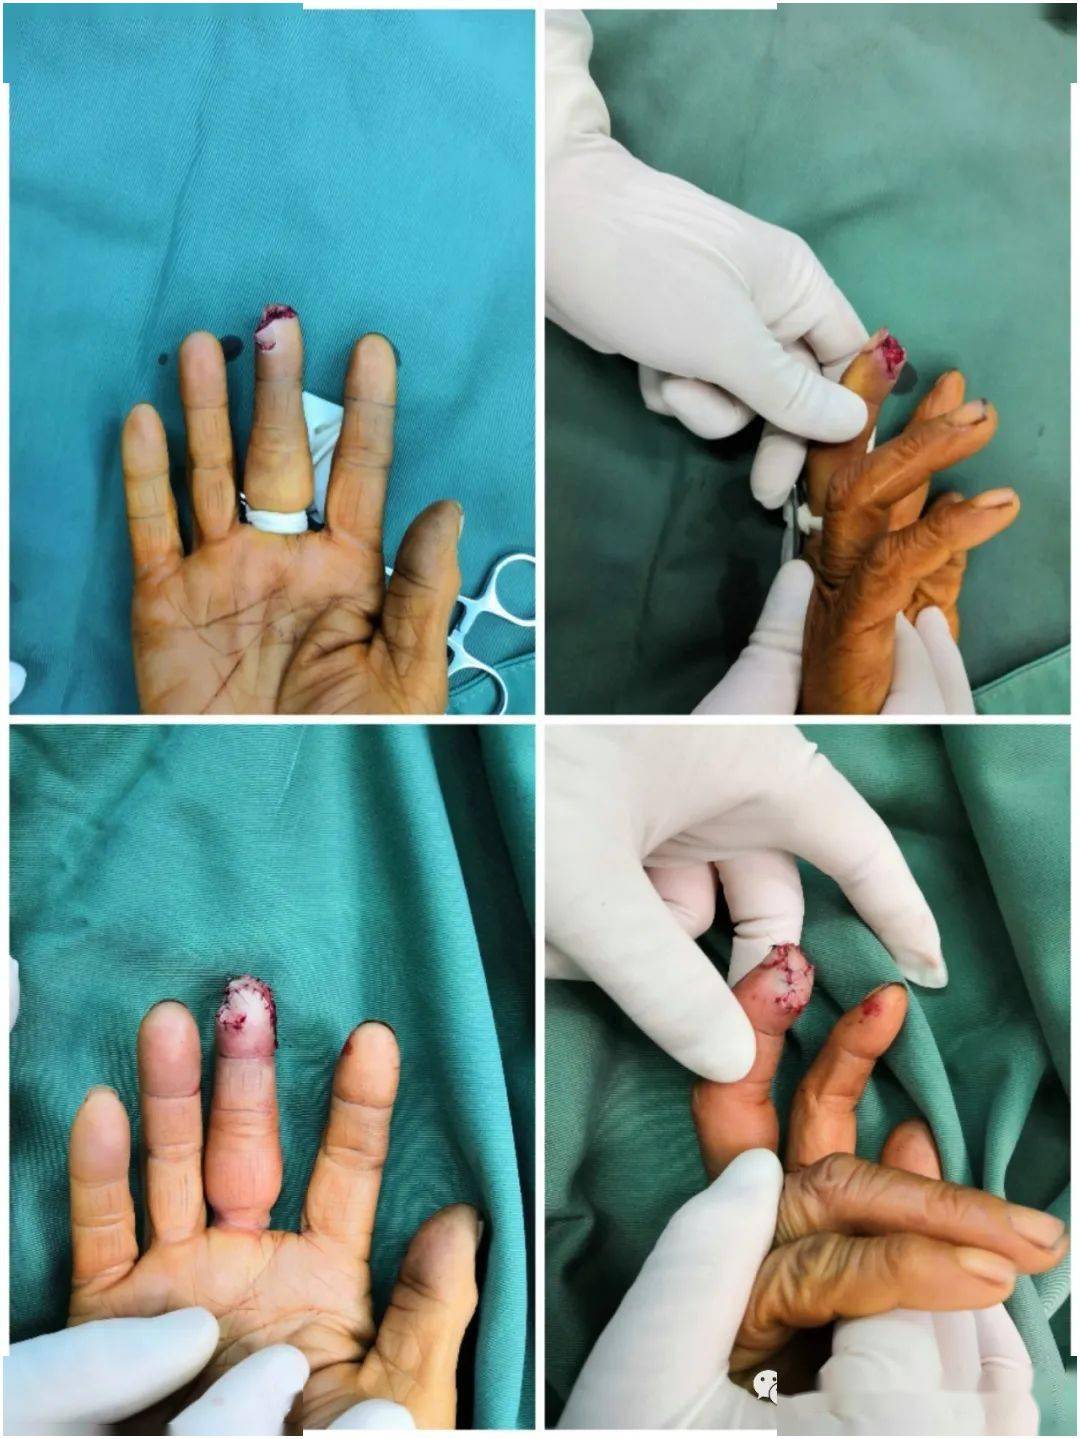 微型皮瓣塑造完美手指,患者直夸好_手术